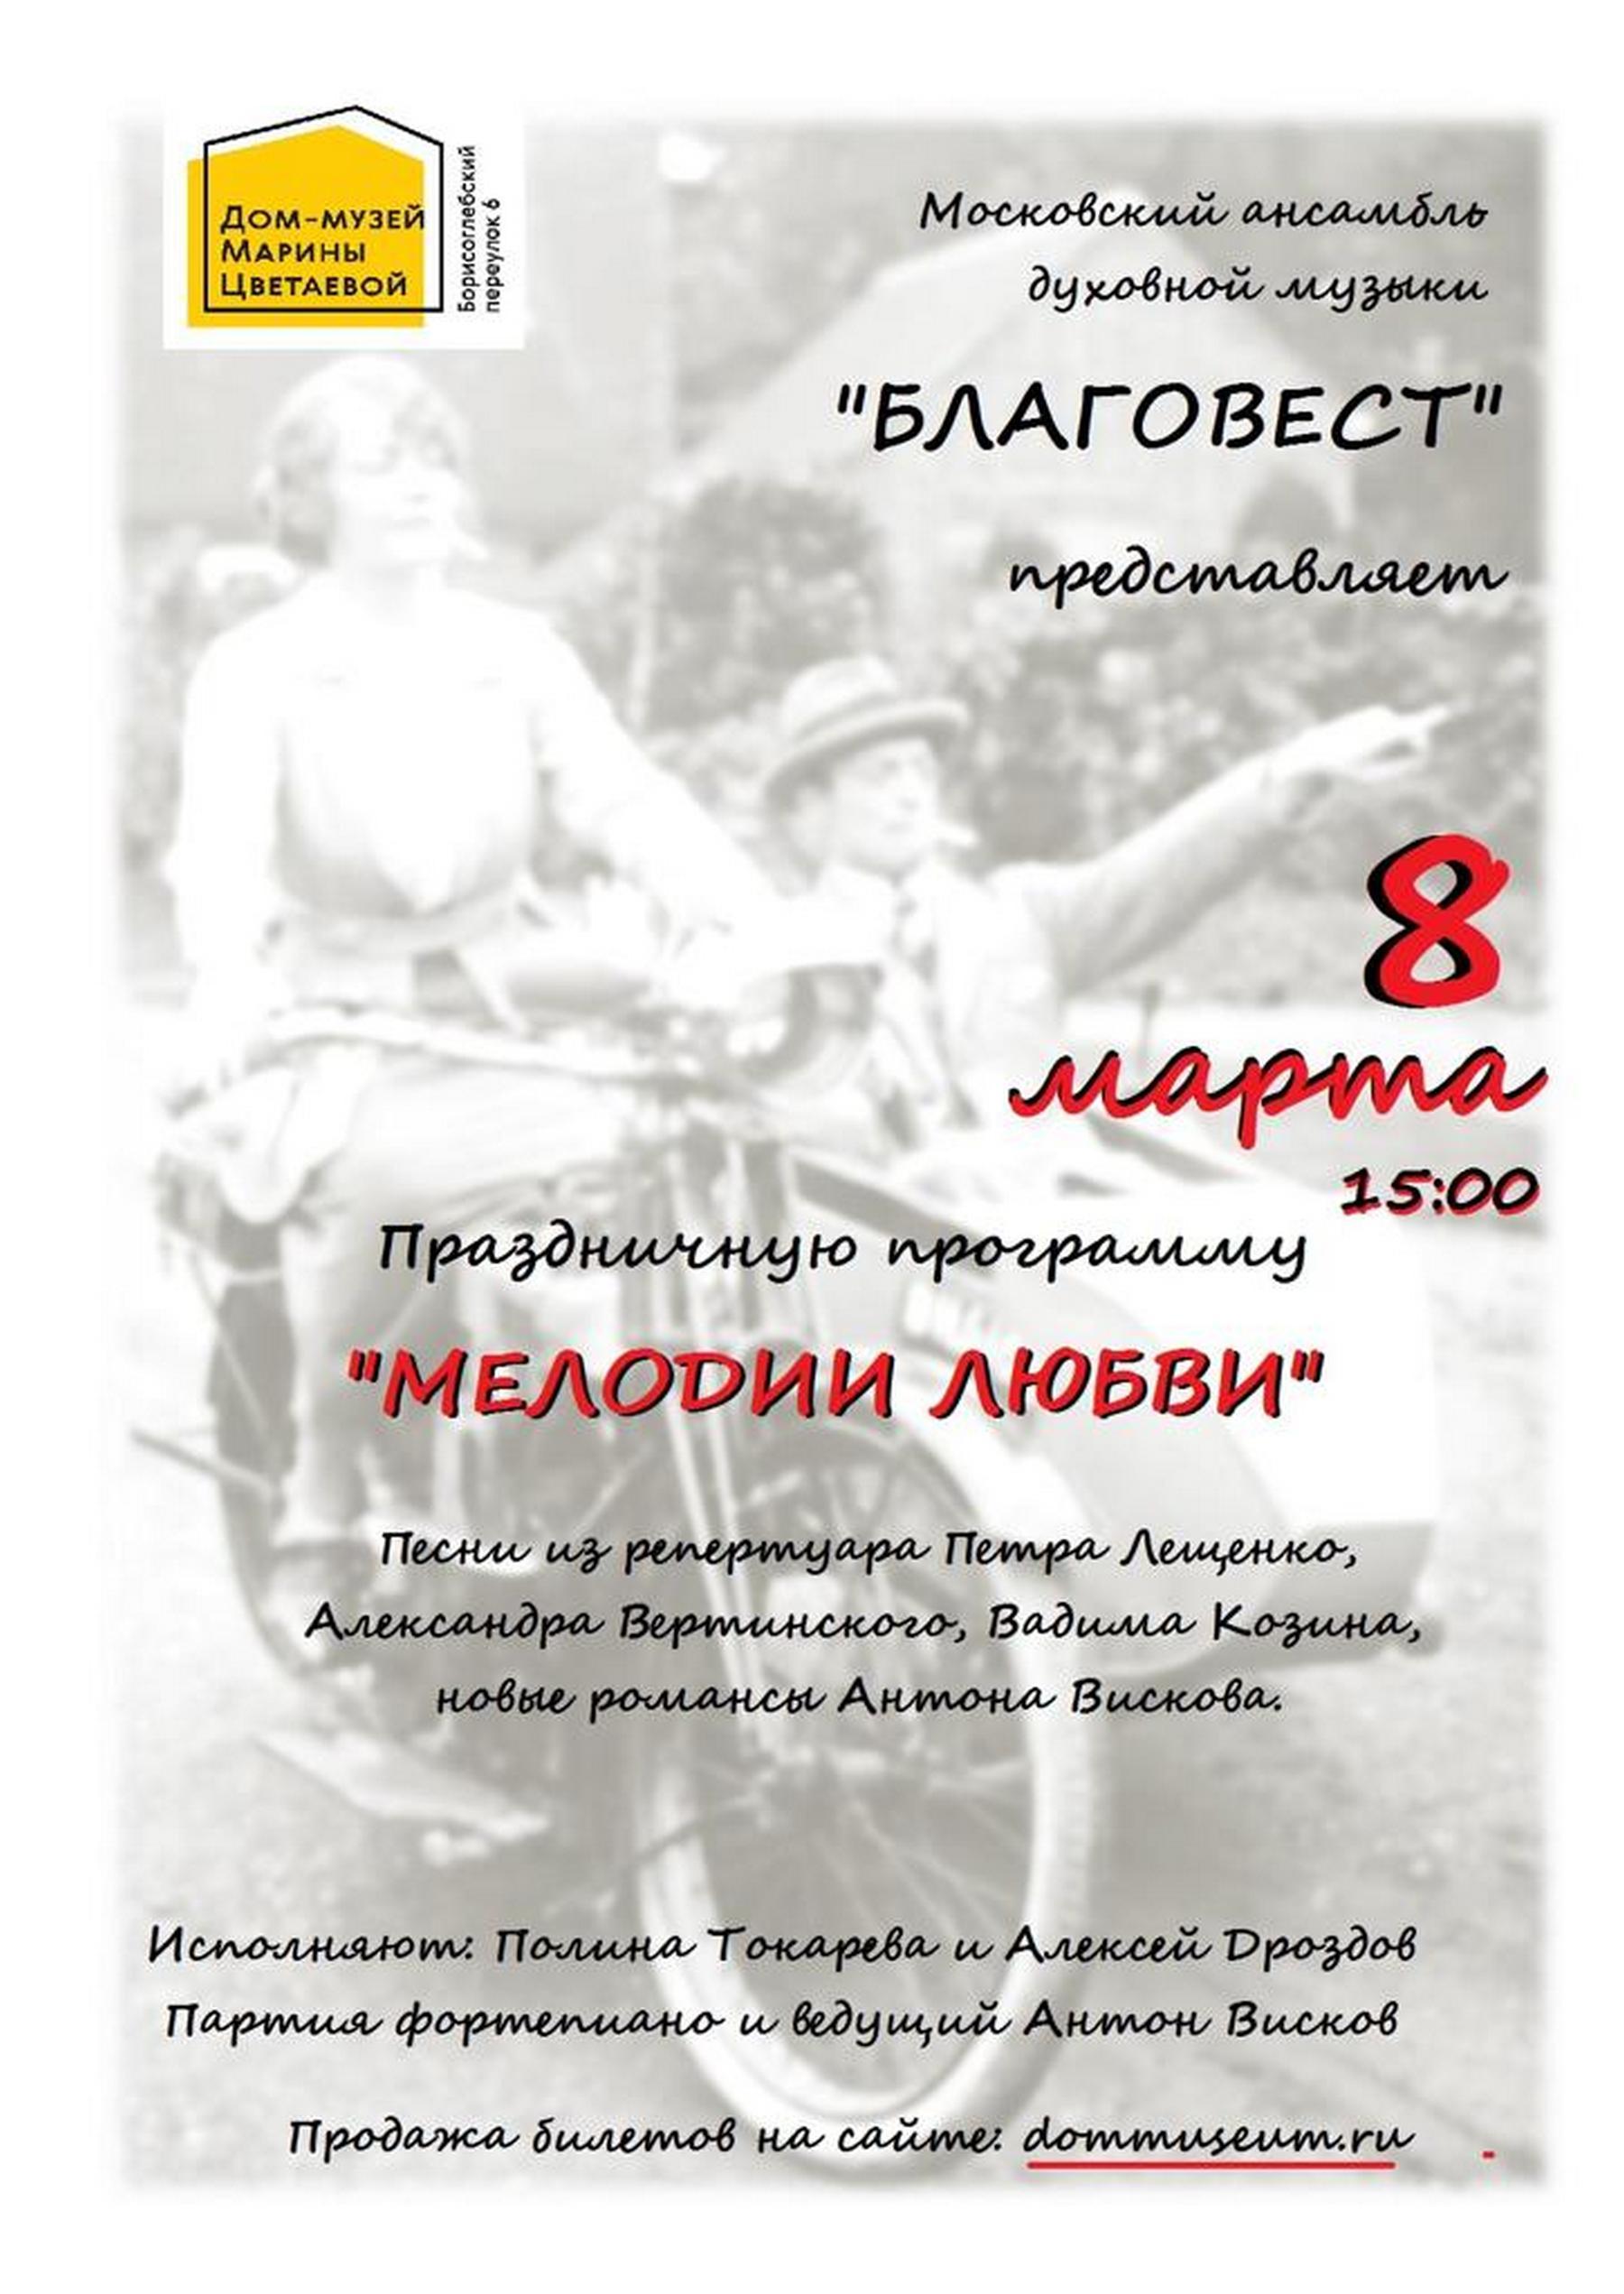 Иллюстрация: «Мелодии любви»: праздничный концерт Московского ансамбля духовной музыки «Благовест»